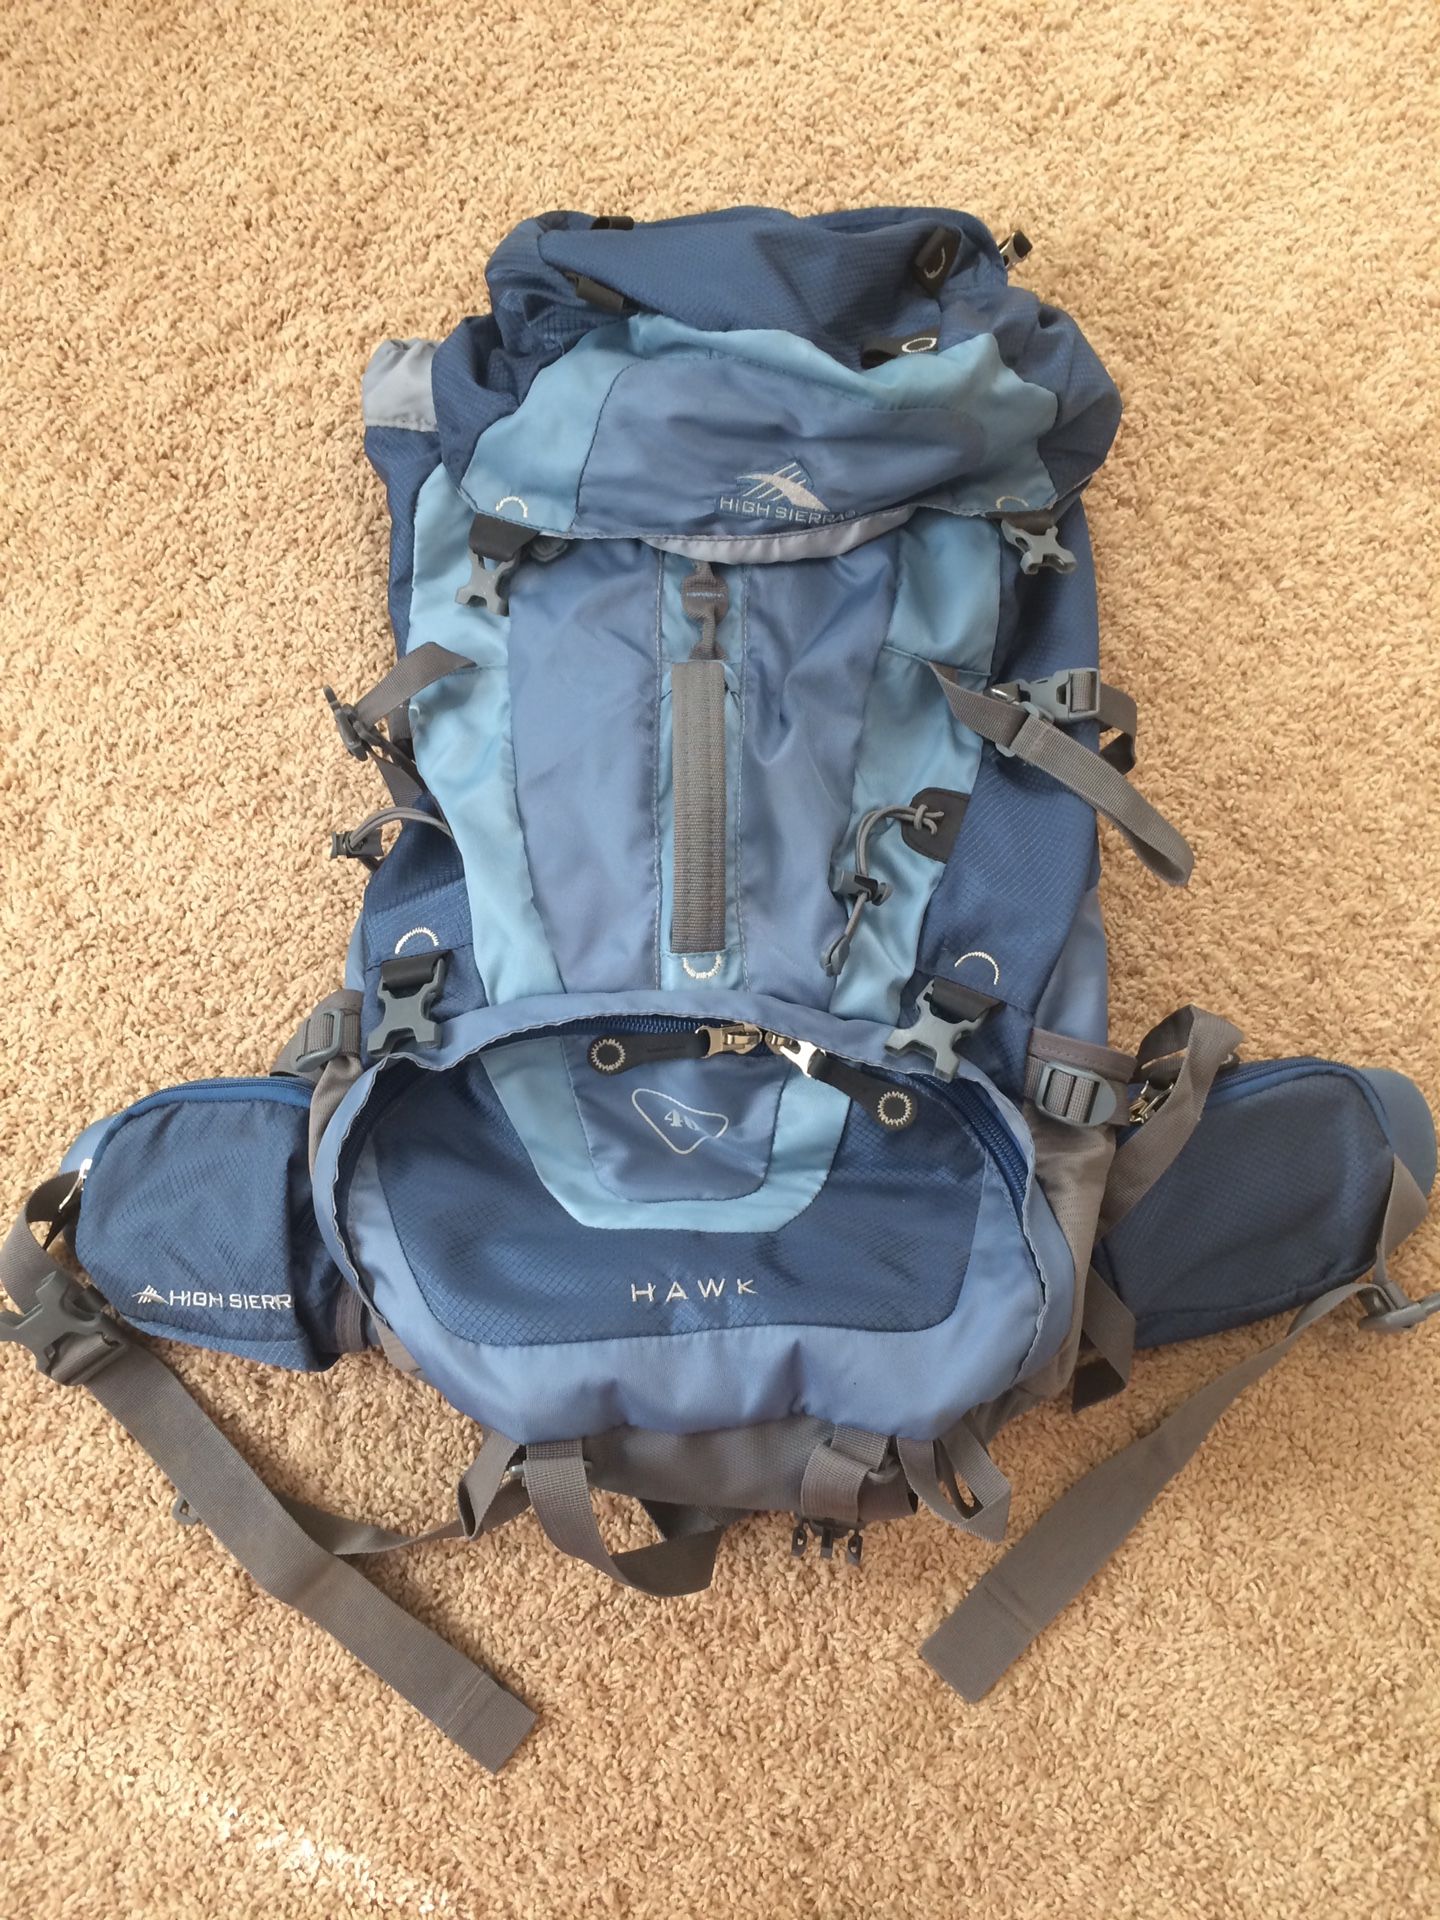 High Sierra 59205 Hawk 45 Blue / Gray Internal Frame Backpacking Hiking Camping Backpack